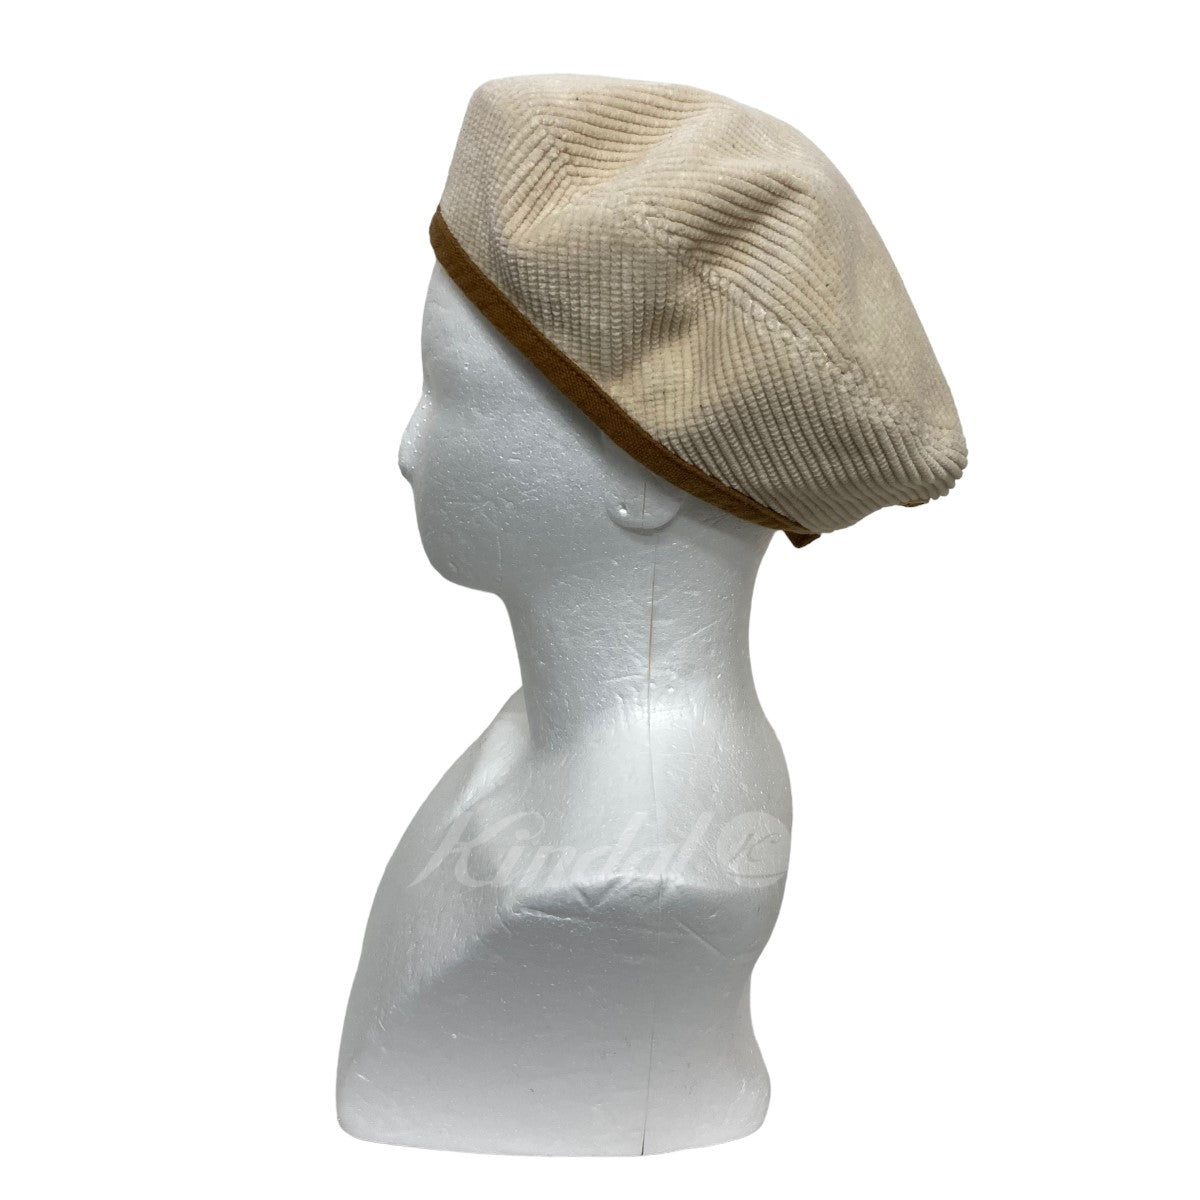 日本正規45R セルビッチコーデュロイのベレー帽 ベージュ 帽子